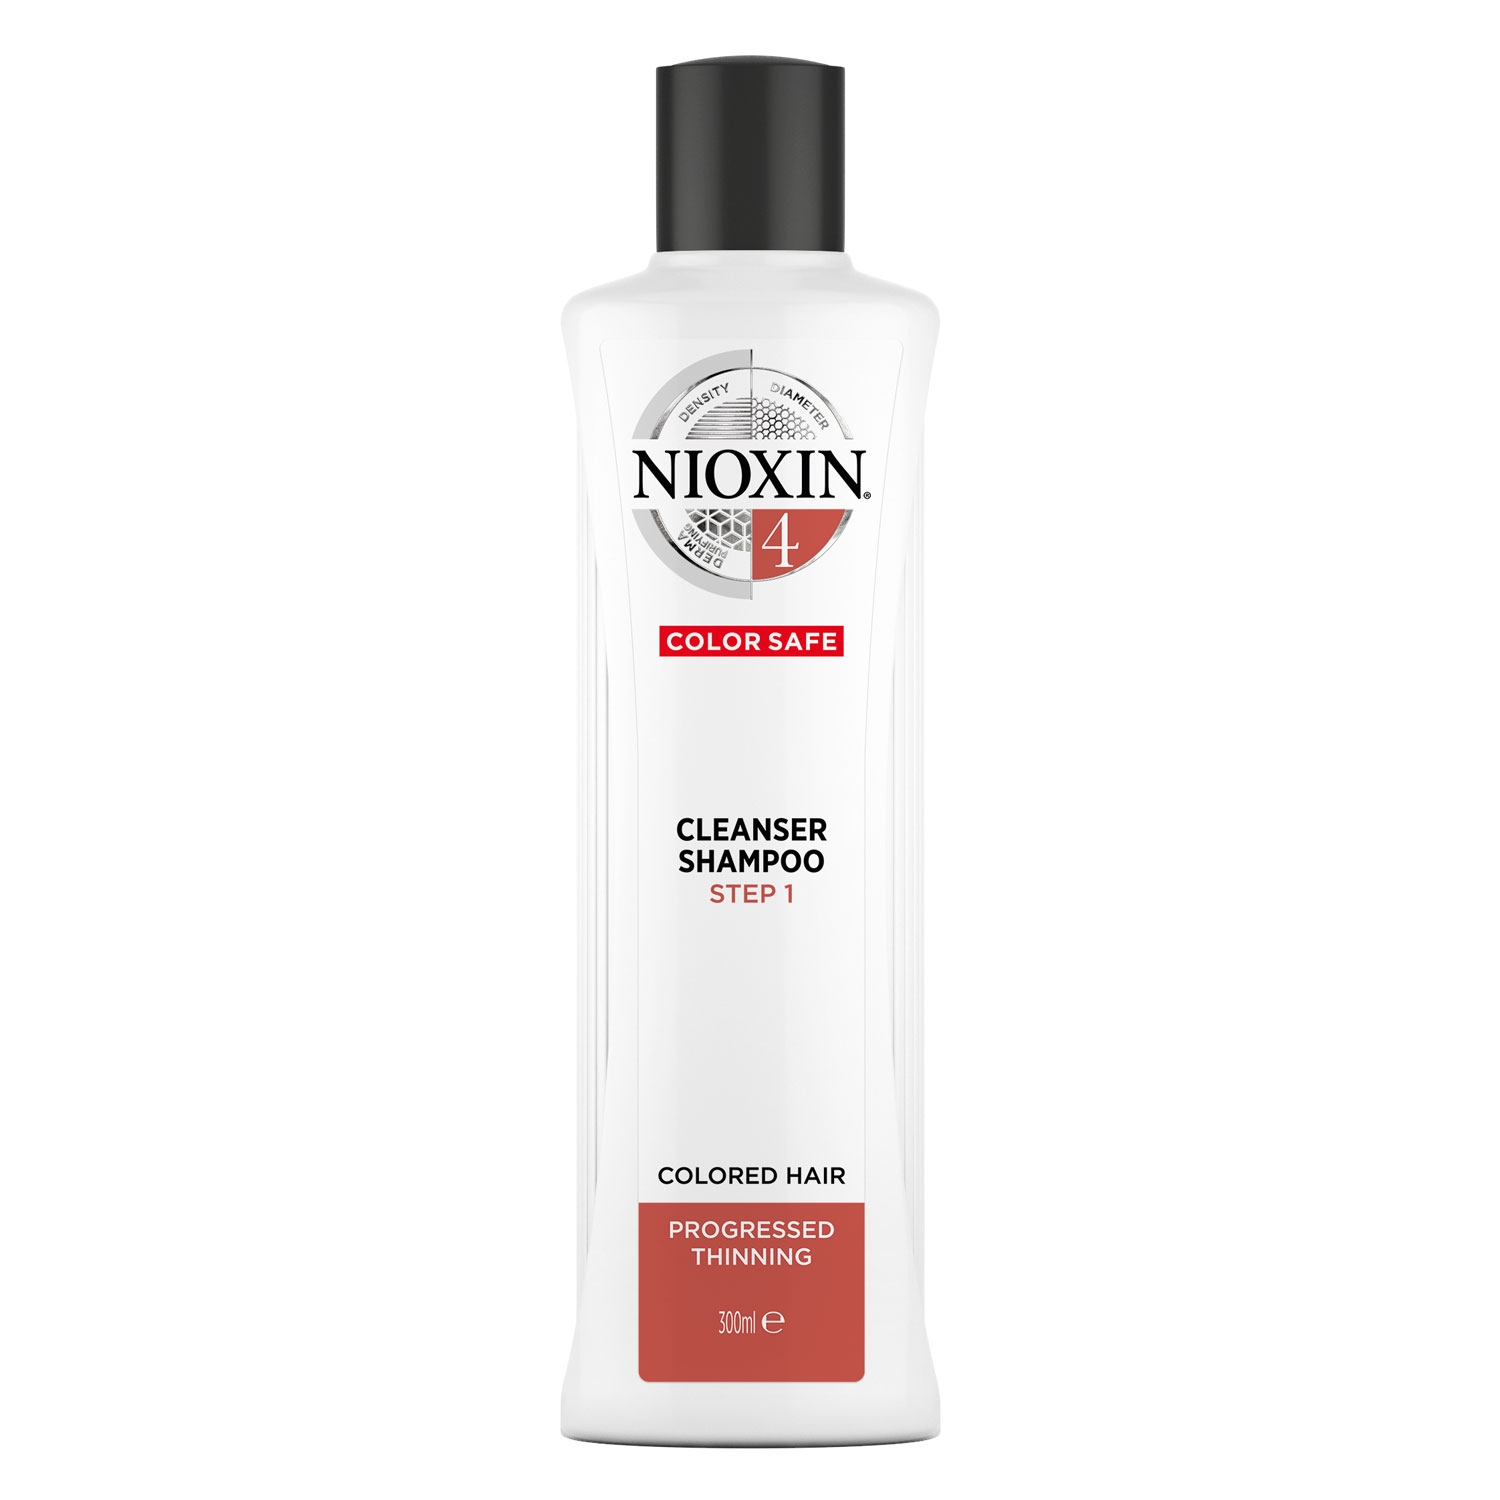 Produktbild von Nioxin - Cleanser Shampoo 4